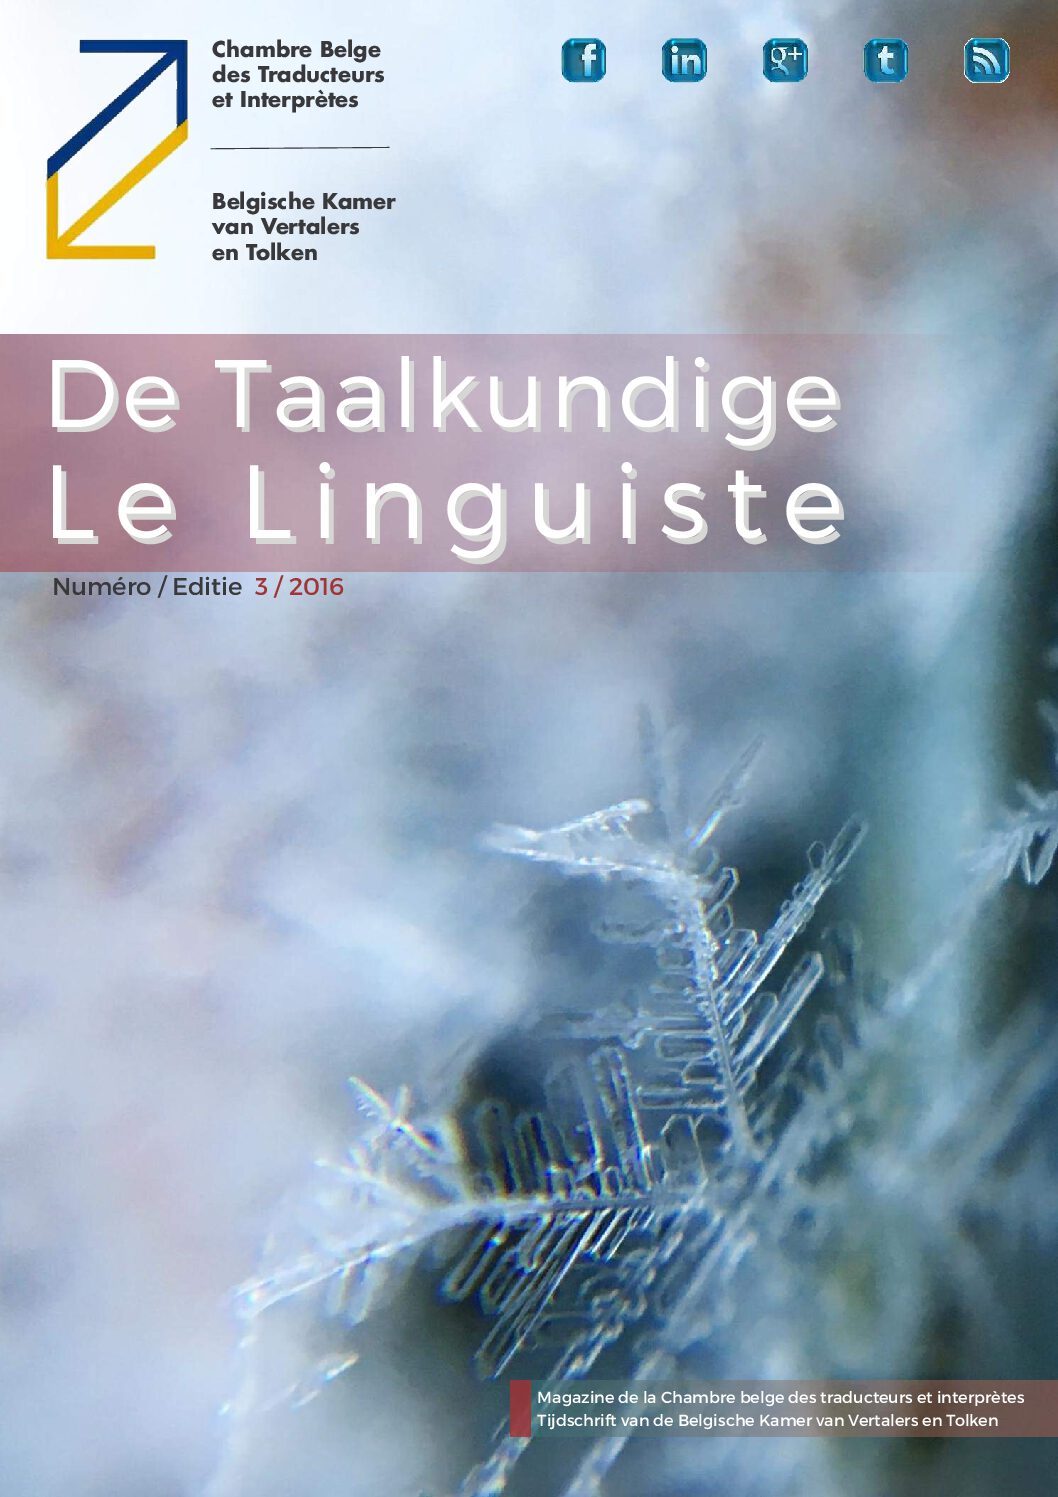 Image de présentation pour le document : De Taalkundige – Le Linguiste 2016 / 3